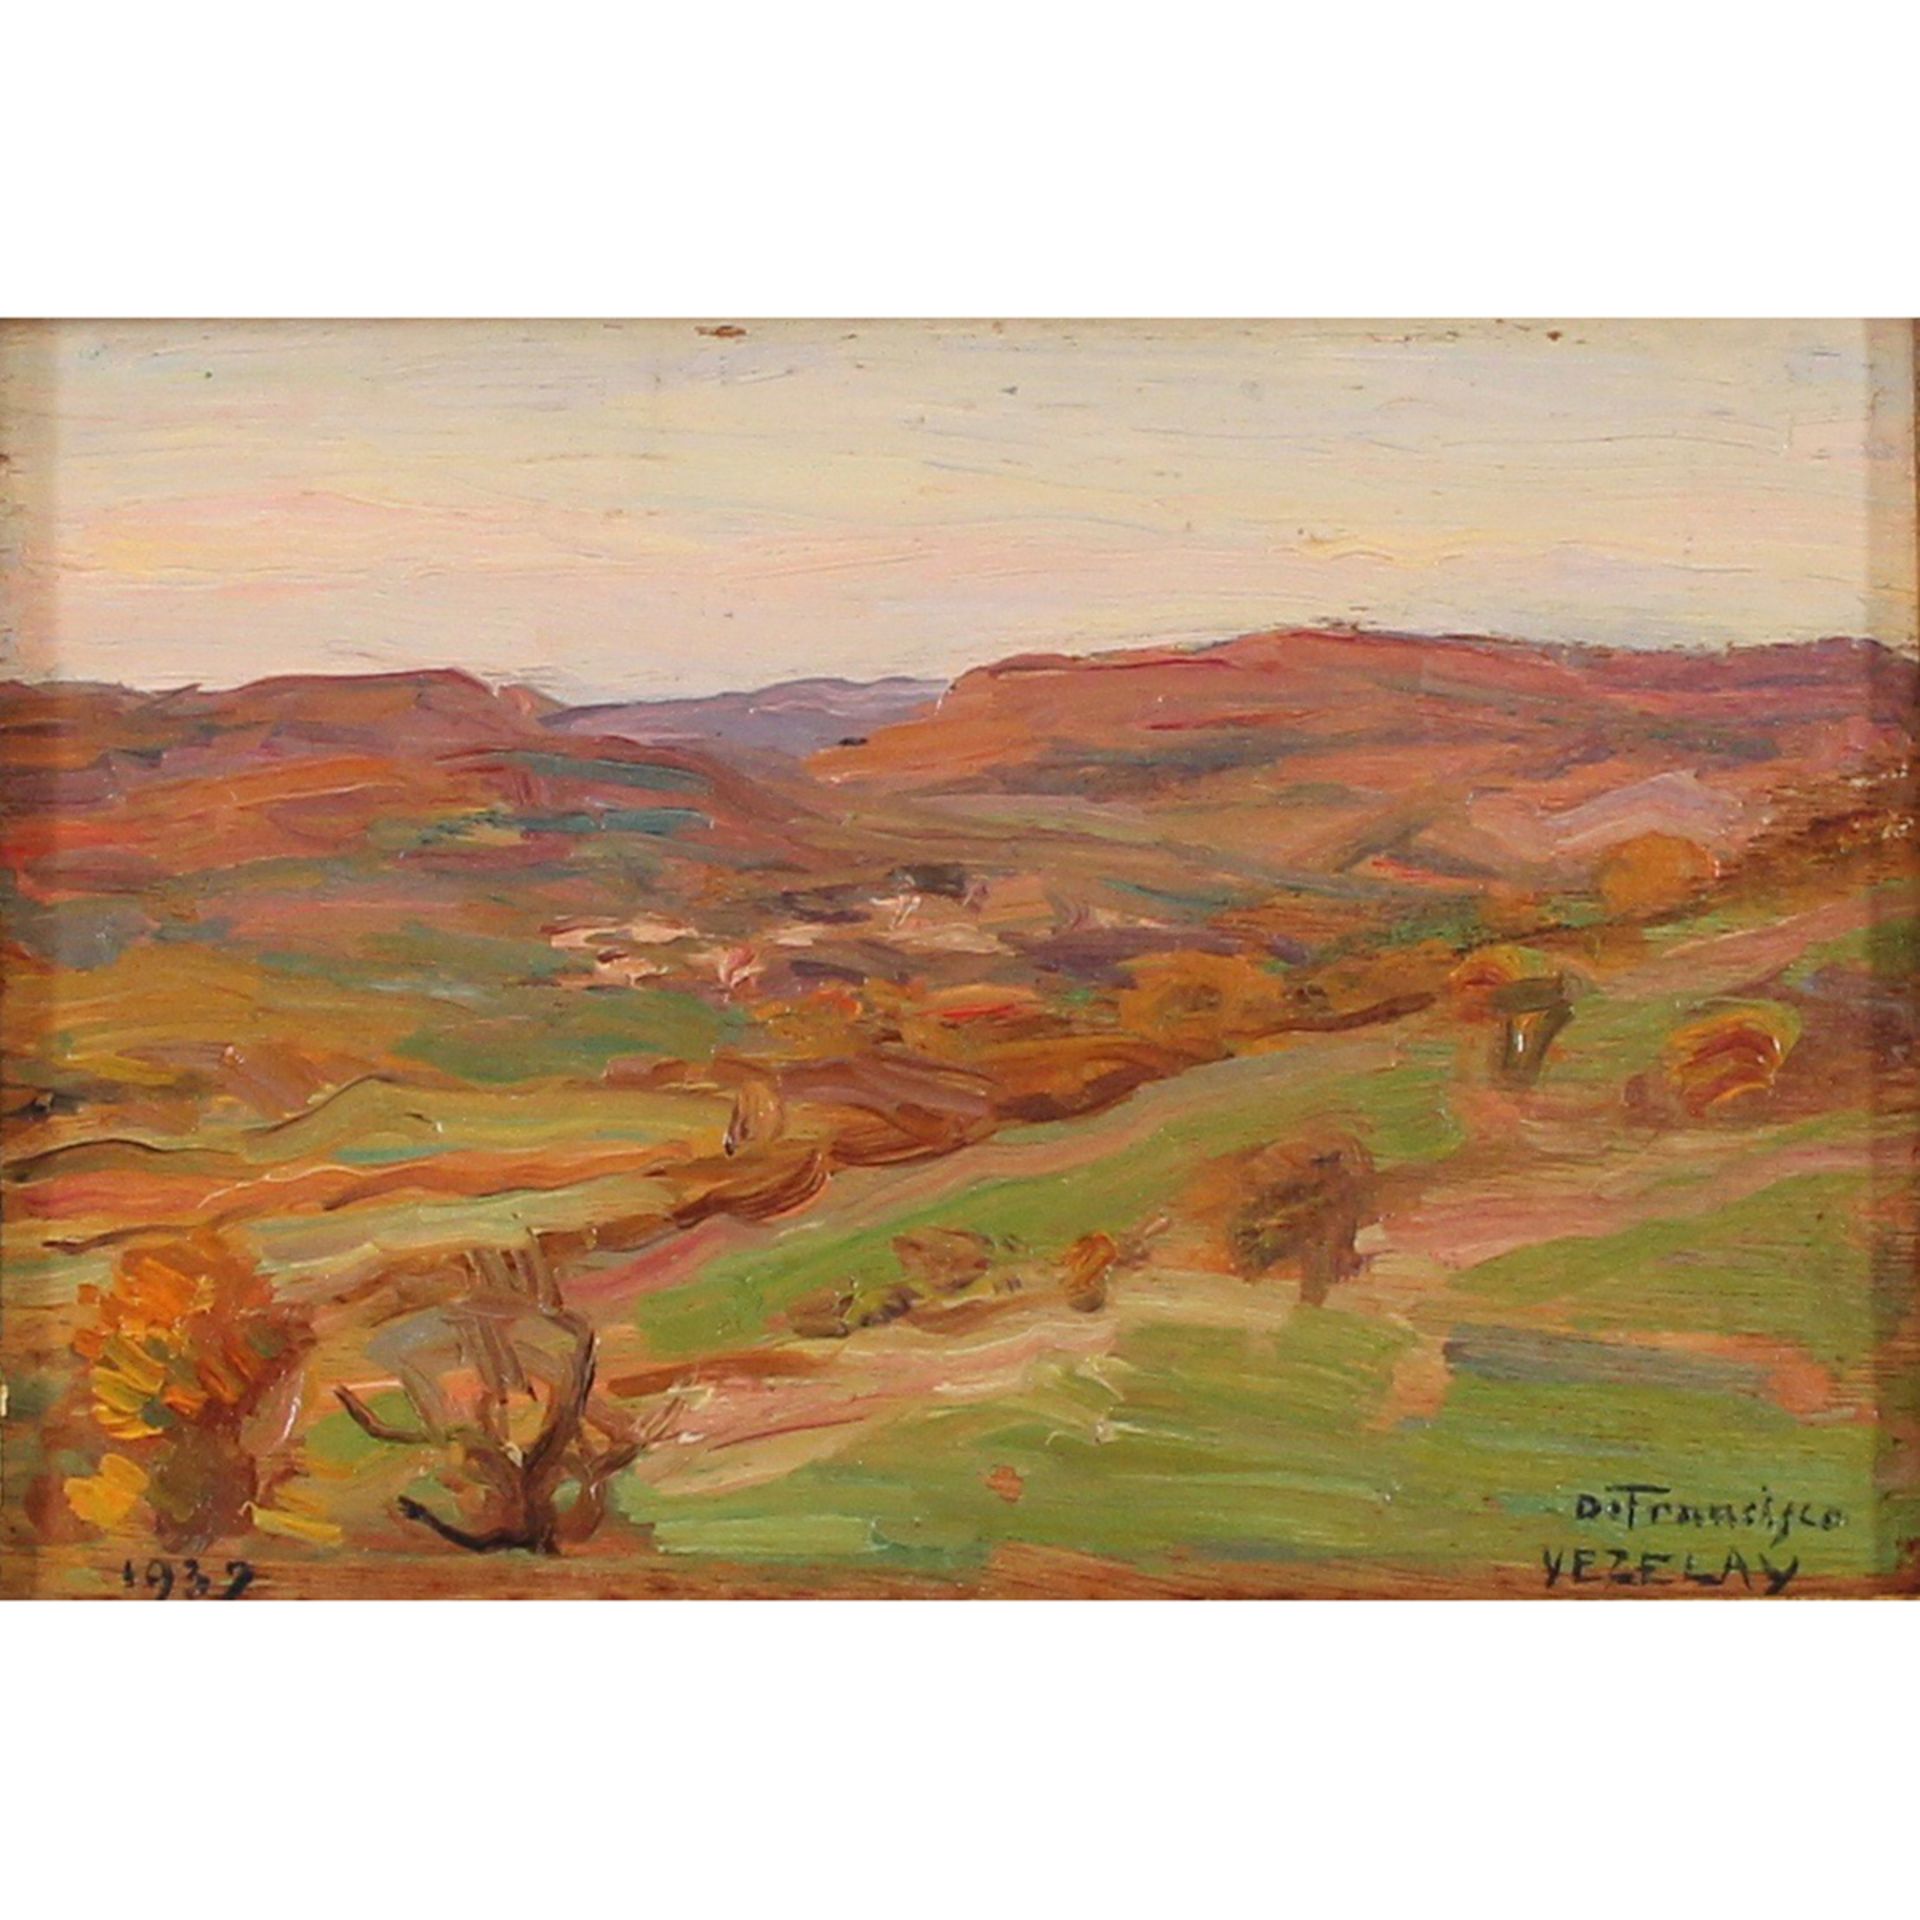 524 PIETRO DE FRANCISCO (1873-1969) "Vezelay". Dipinto ad olio su tavola.